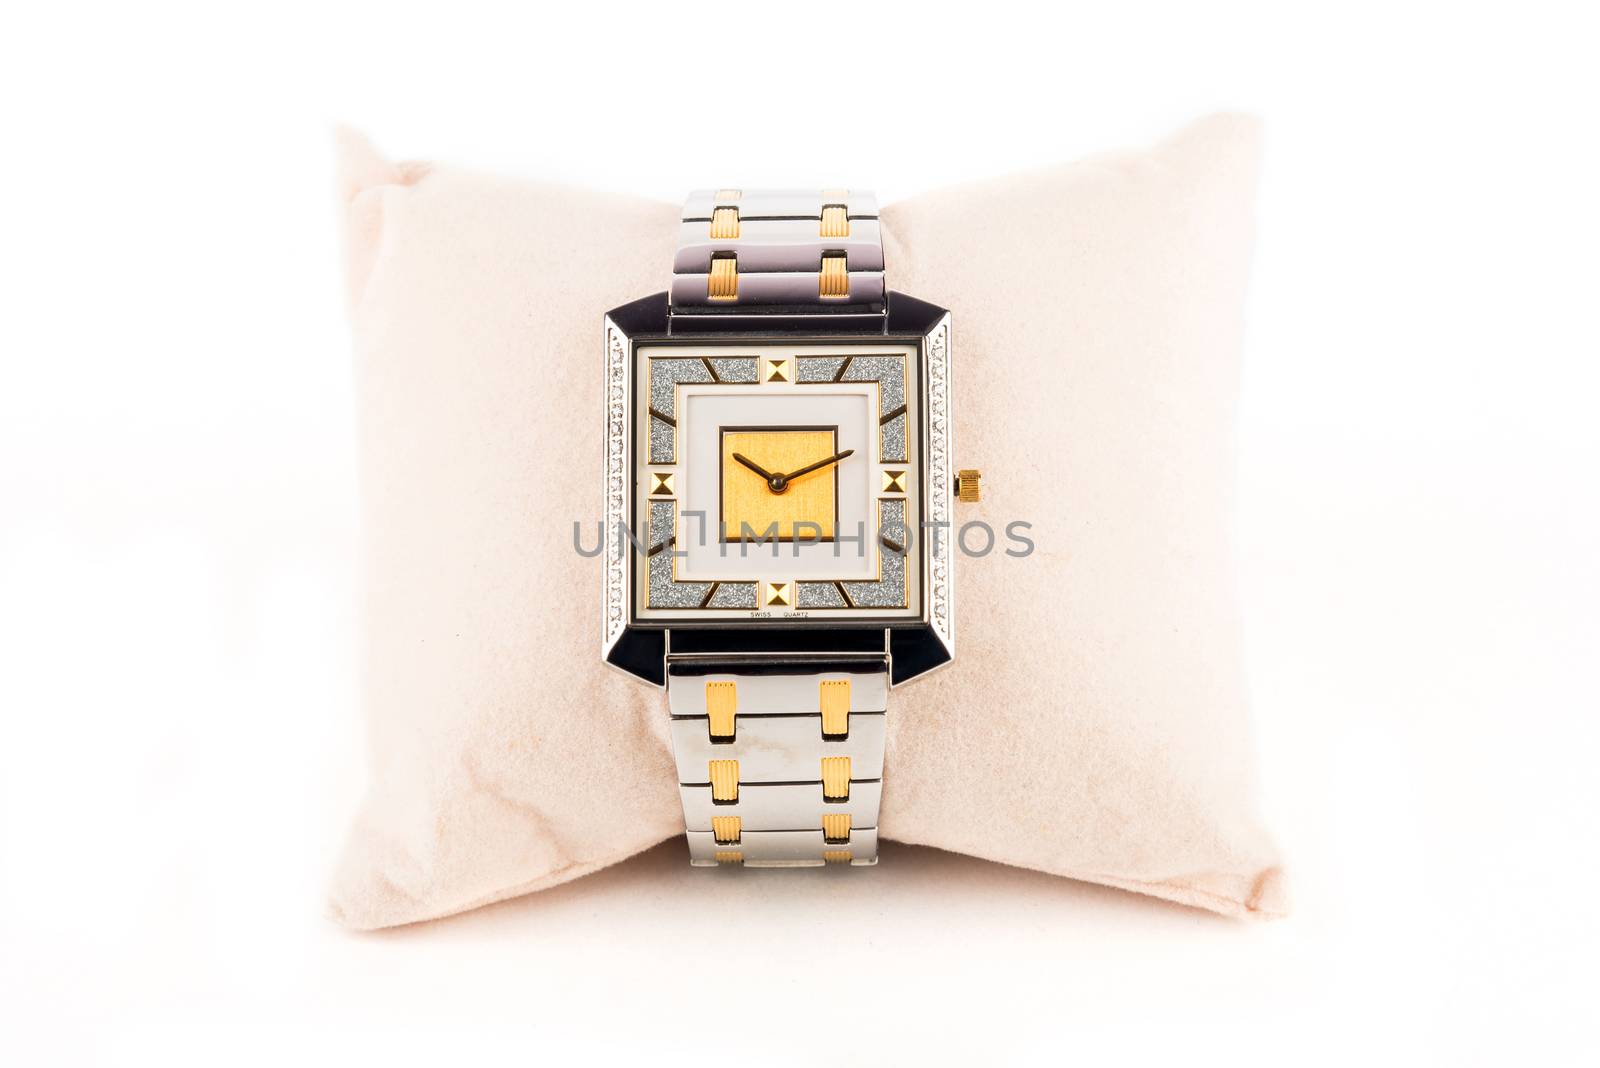 Stylish sapphire swiss quartz jewelery watch with sleek dial having diamonds